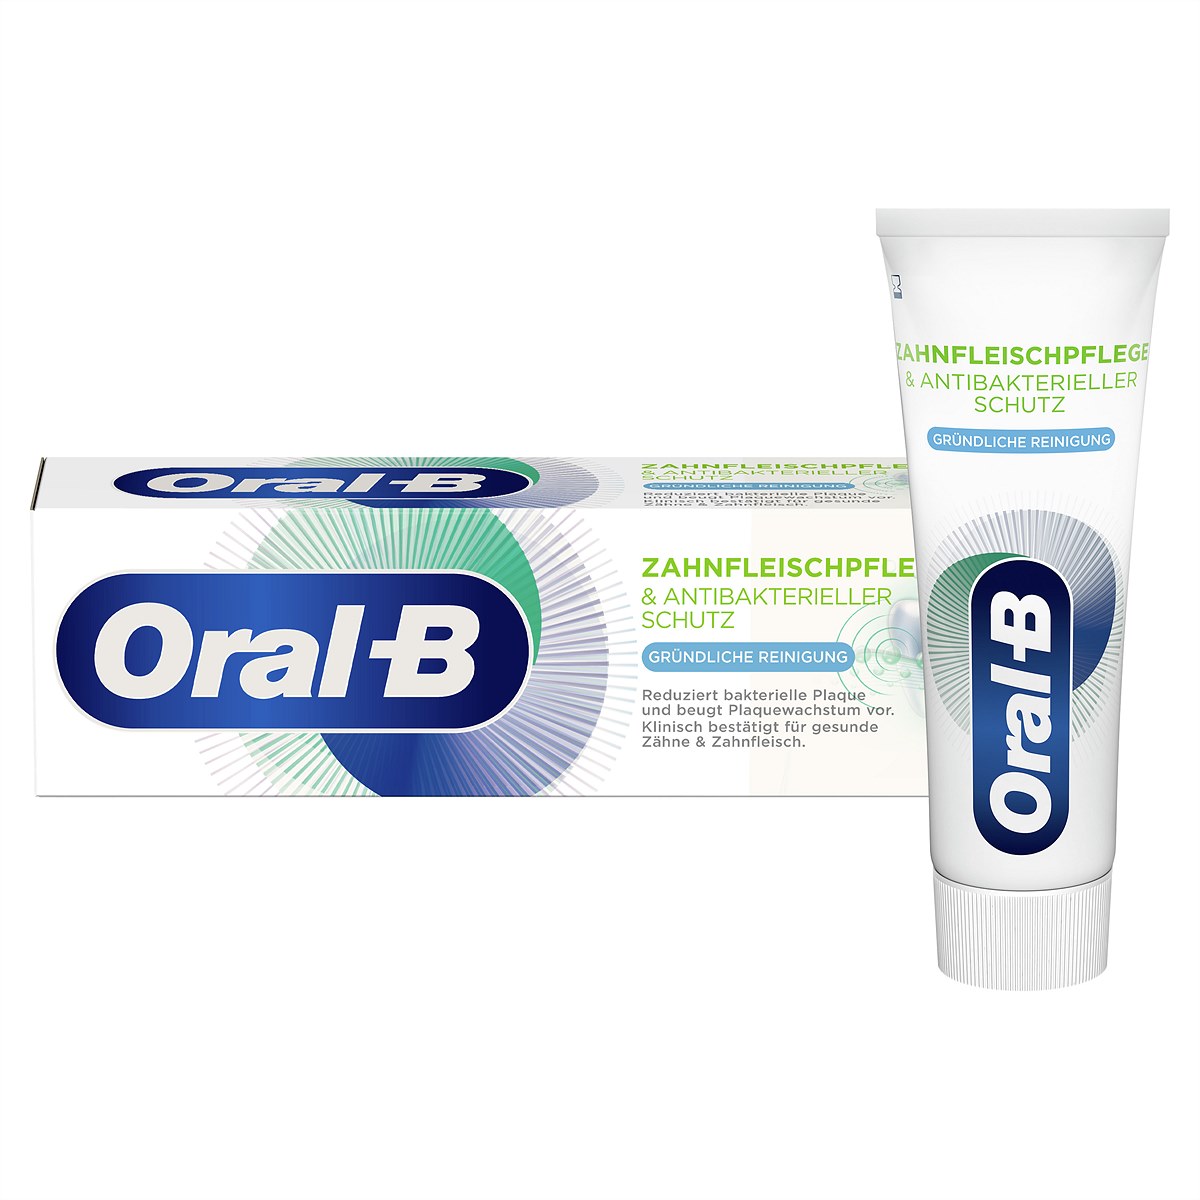 Oral-B Zahnfleischpflege & Antibakterieller Schutz